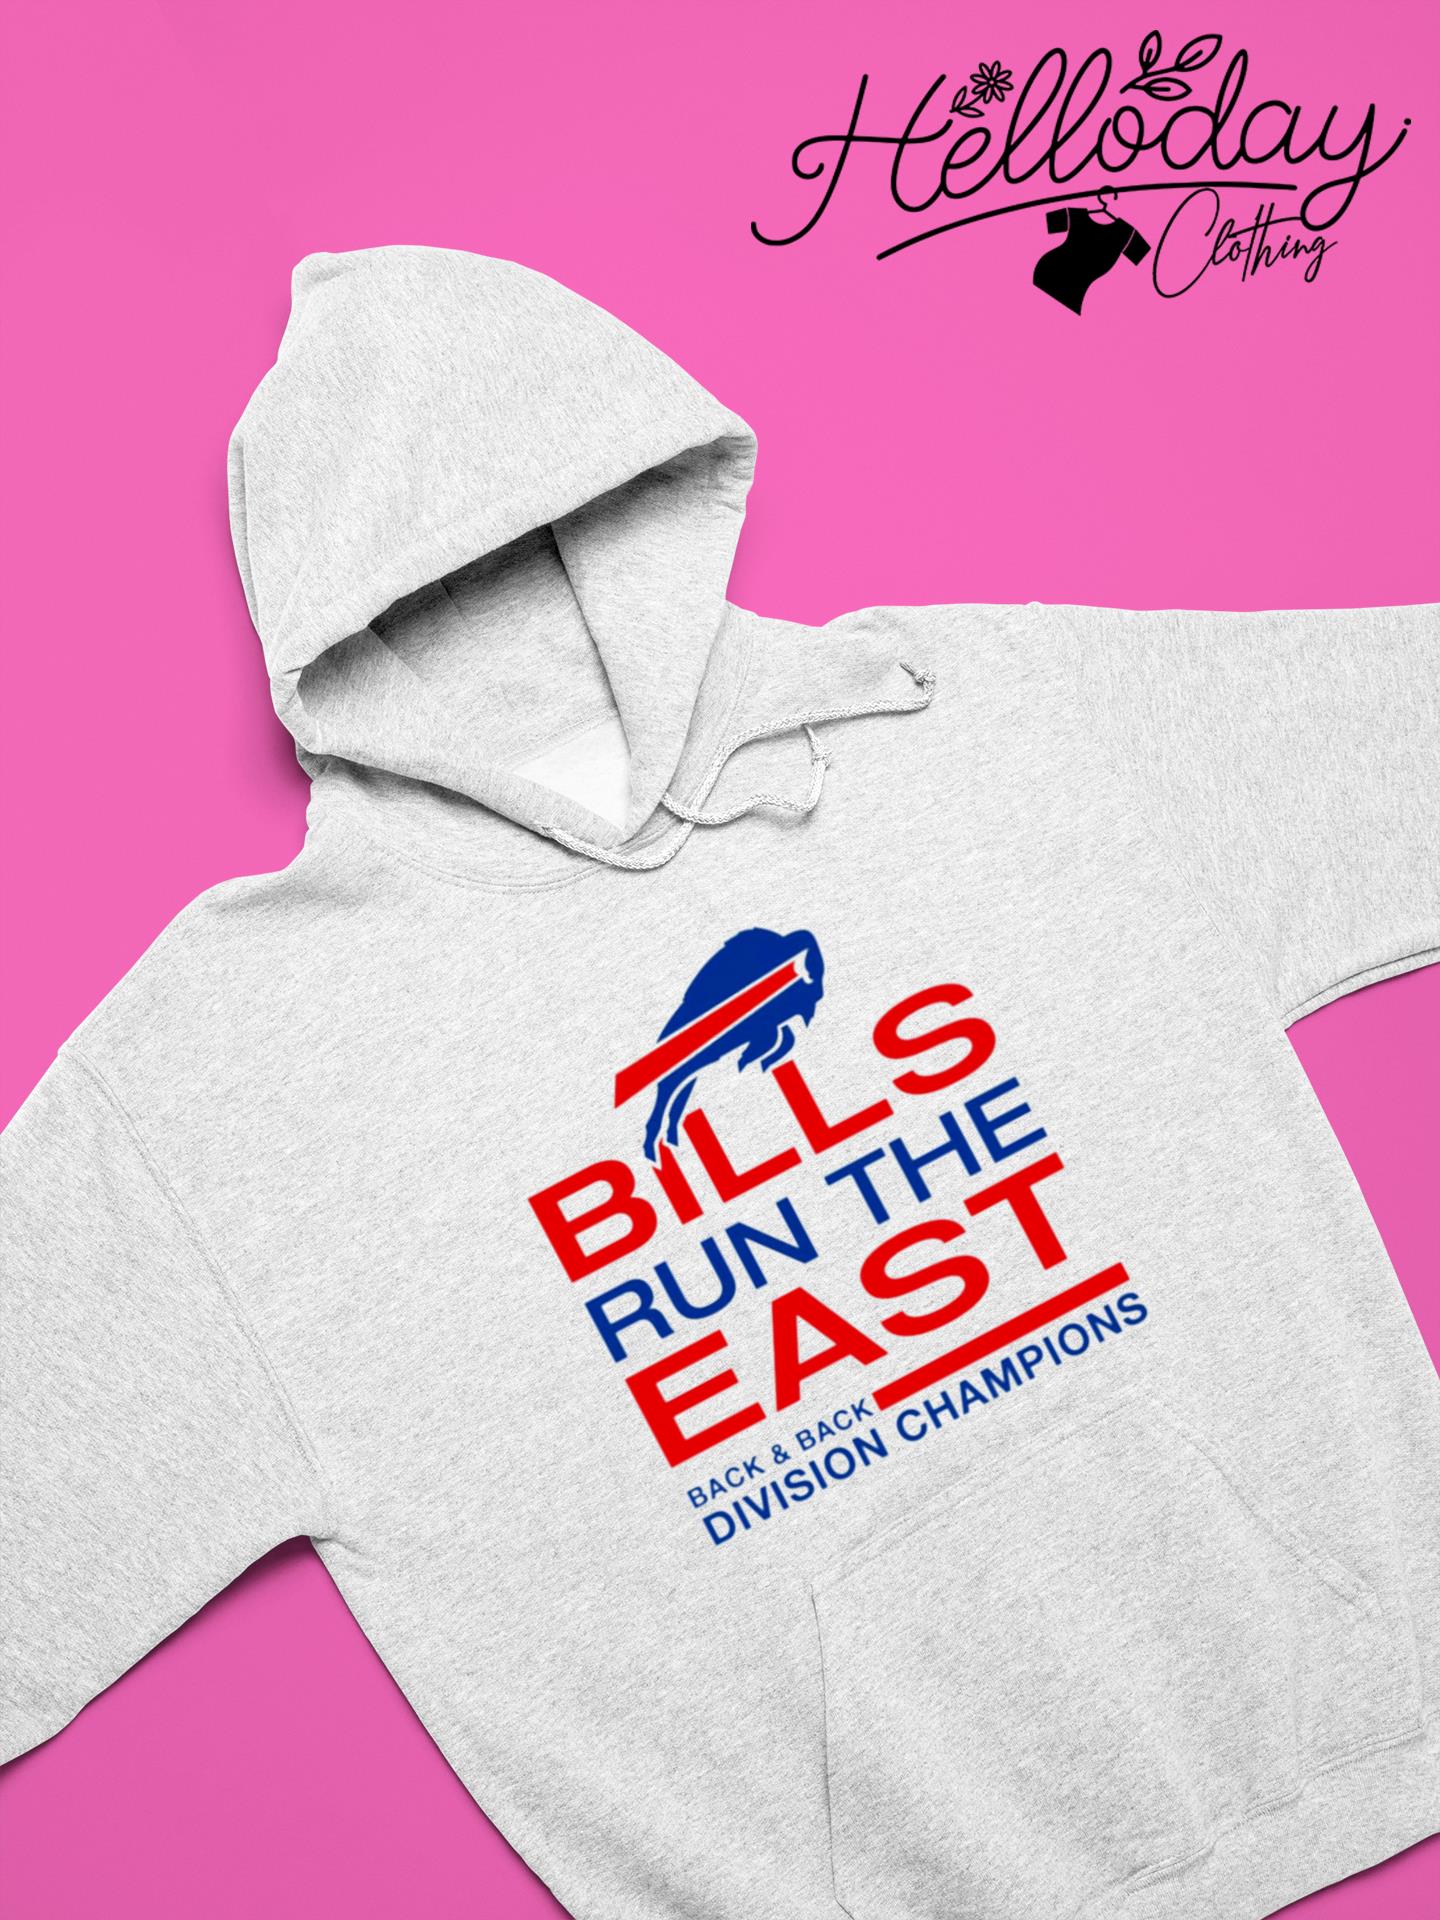 buffalo bills run the east shirt